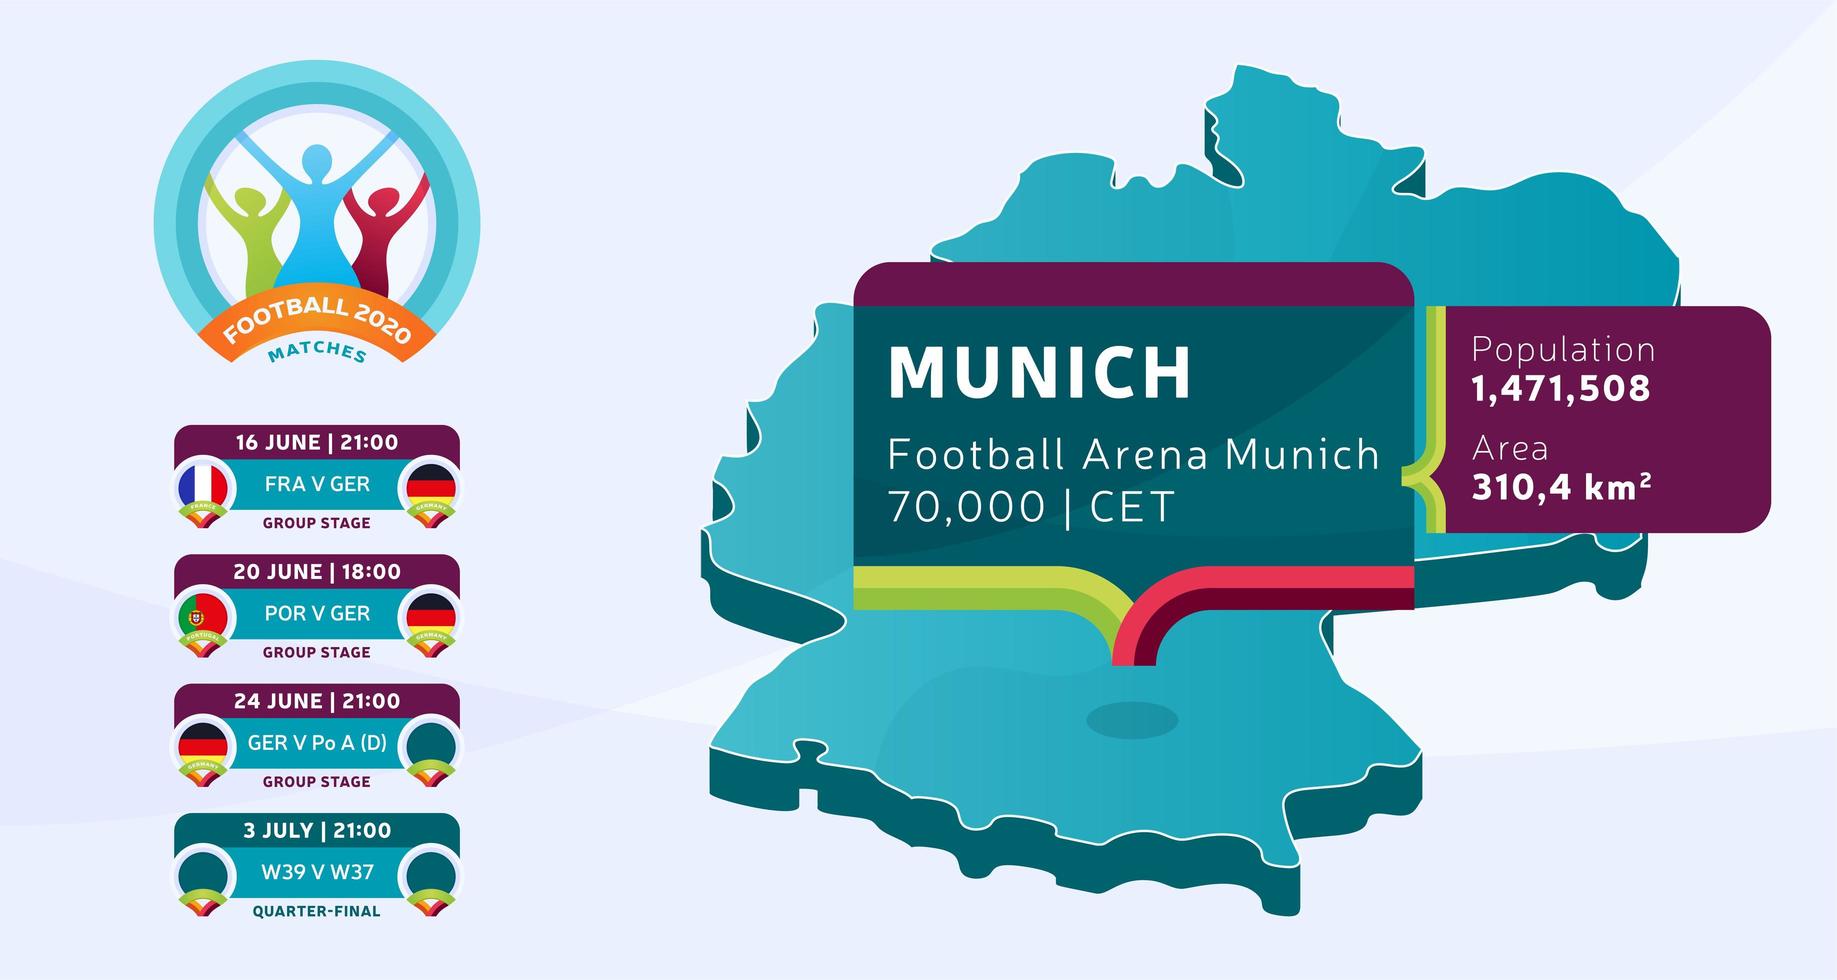 isometrisk Tyskland landskarta taggad i München stadion som kommer att hållas fotbollsmatcher vektorillustration. fotboll 2020 turnering sista etappen infografik och land info vektor